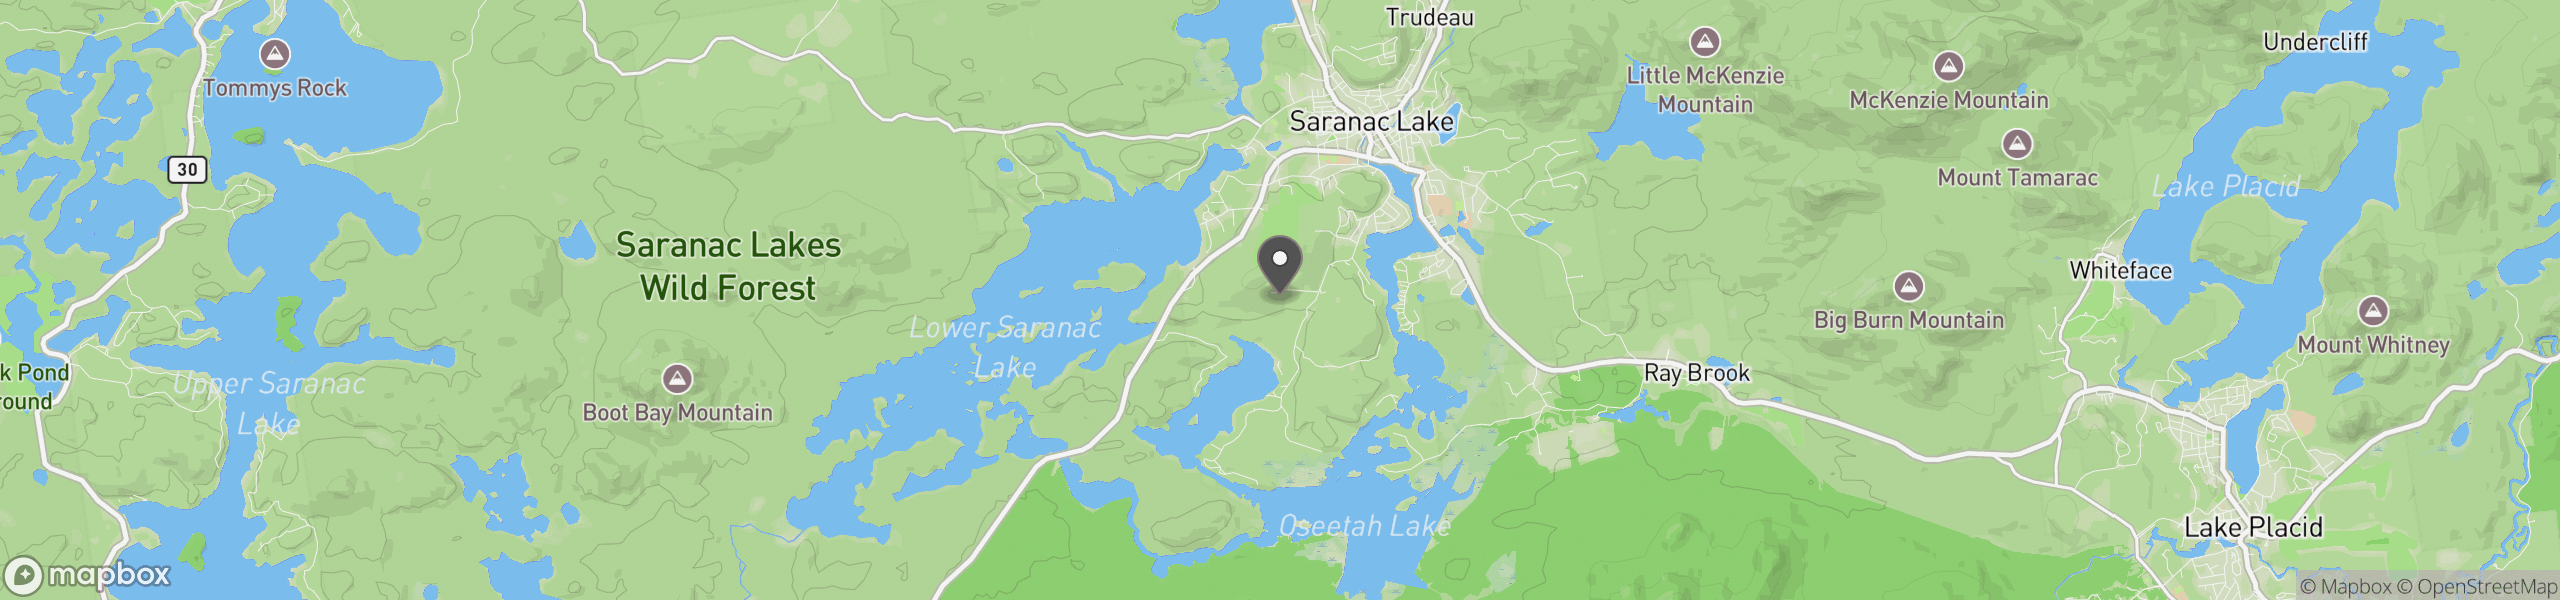 Saranac Lake, NY 12983